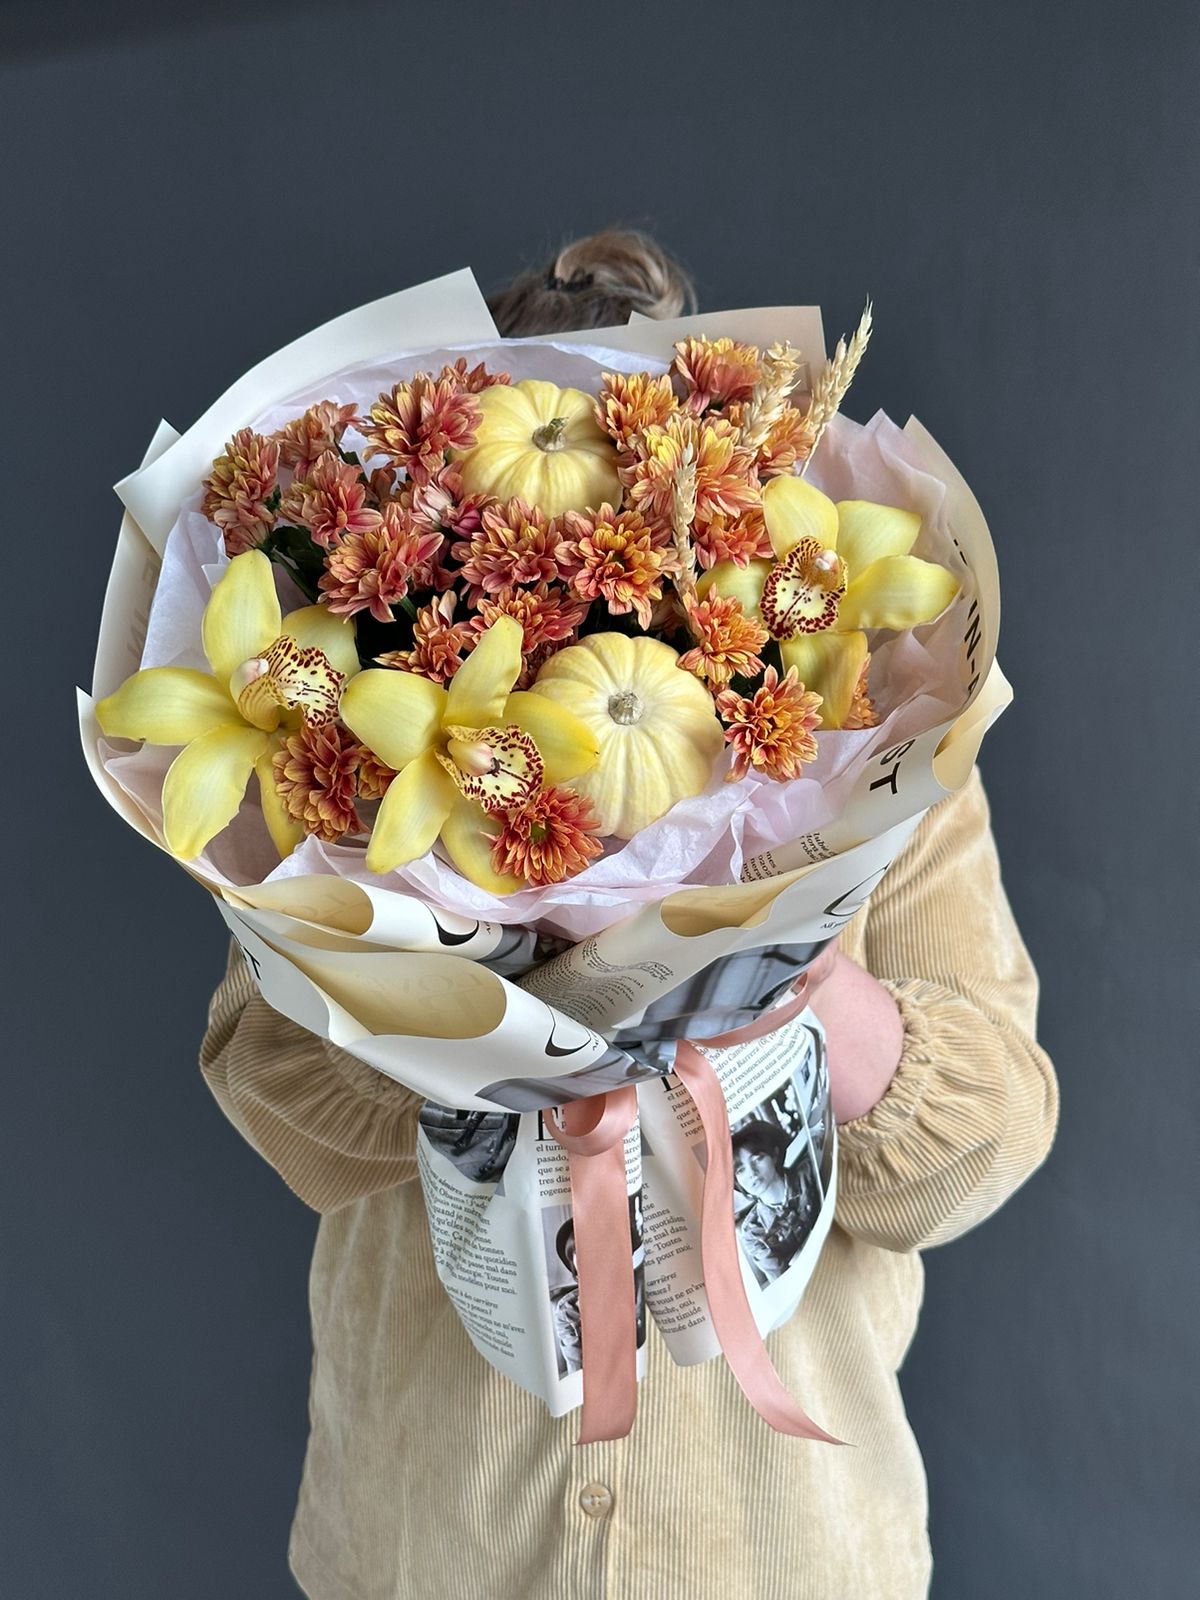 Композиция "Хаора" орхидеи и хризантем